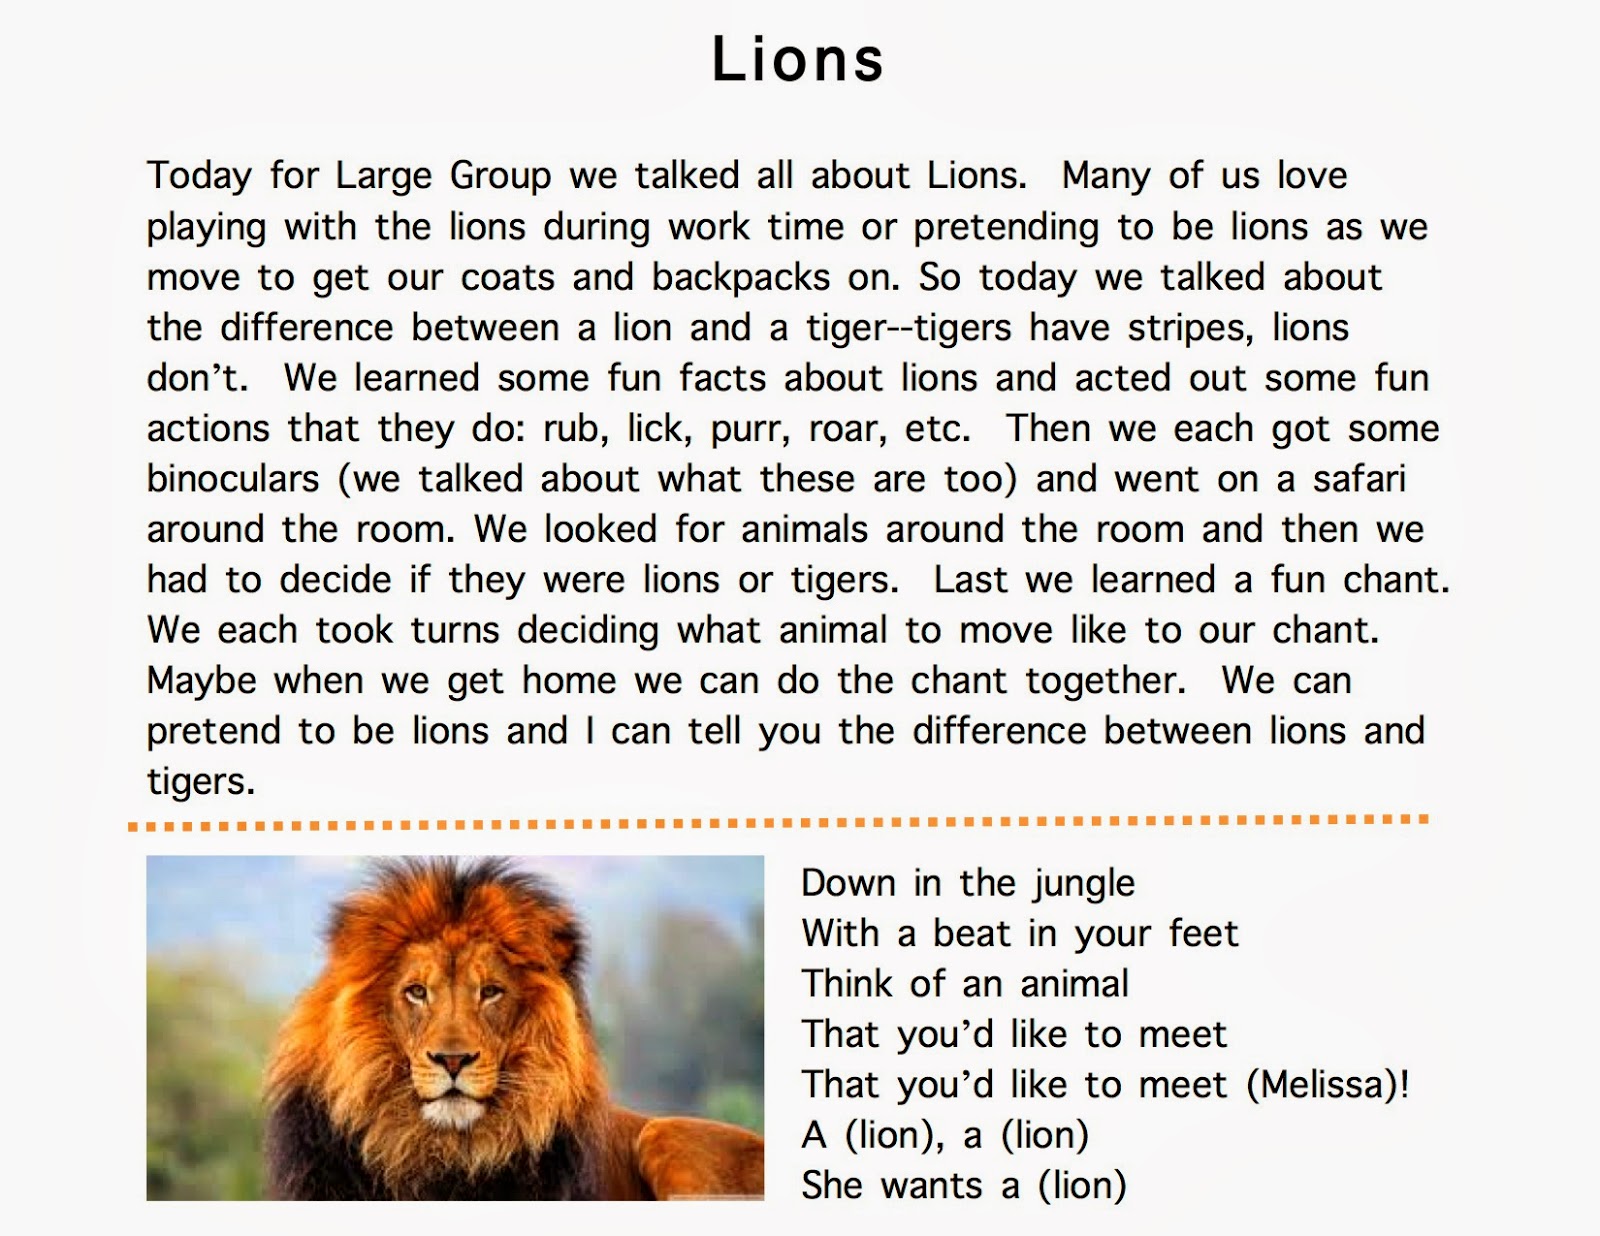 an lion essay